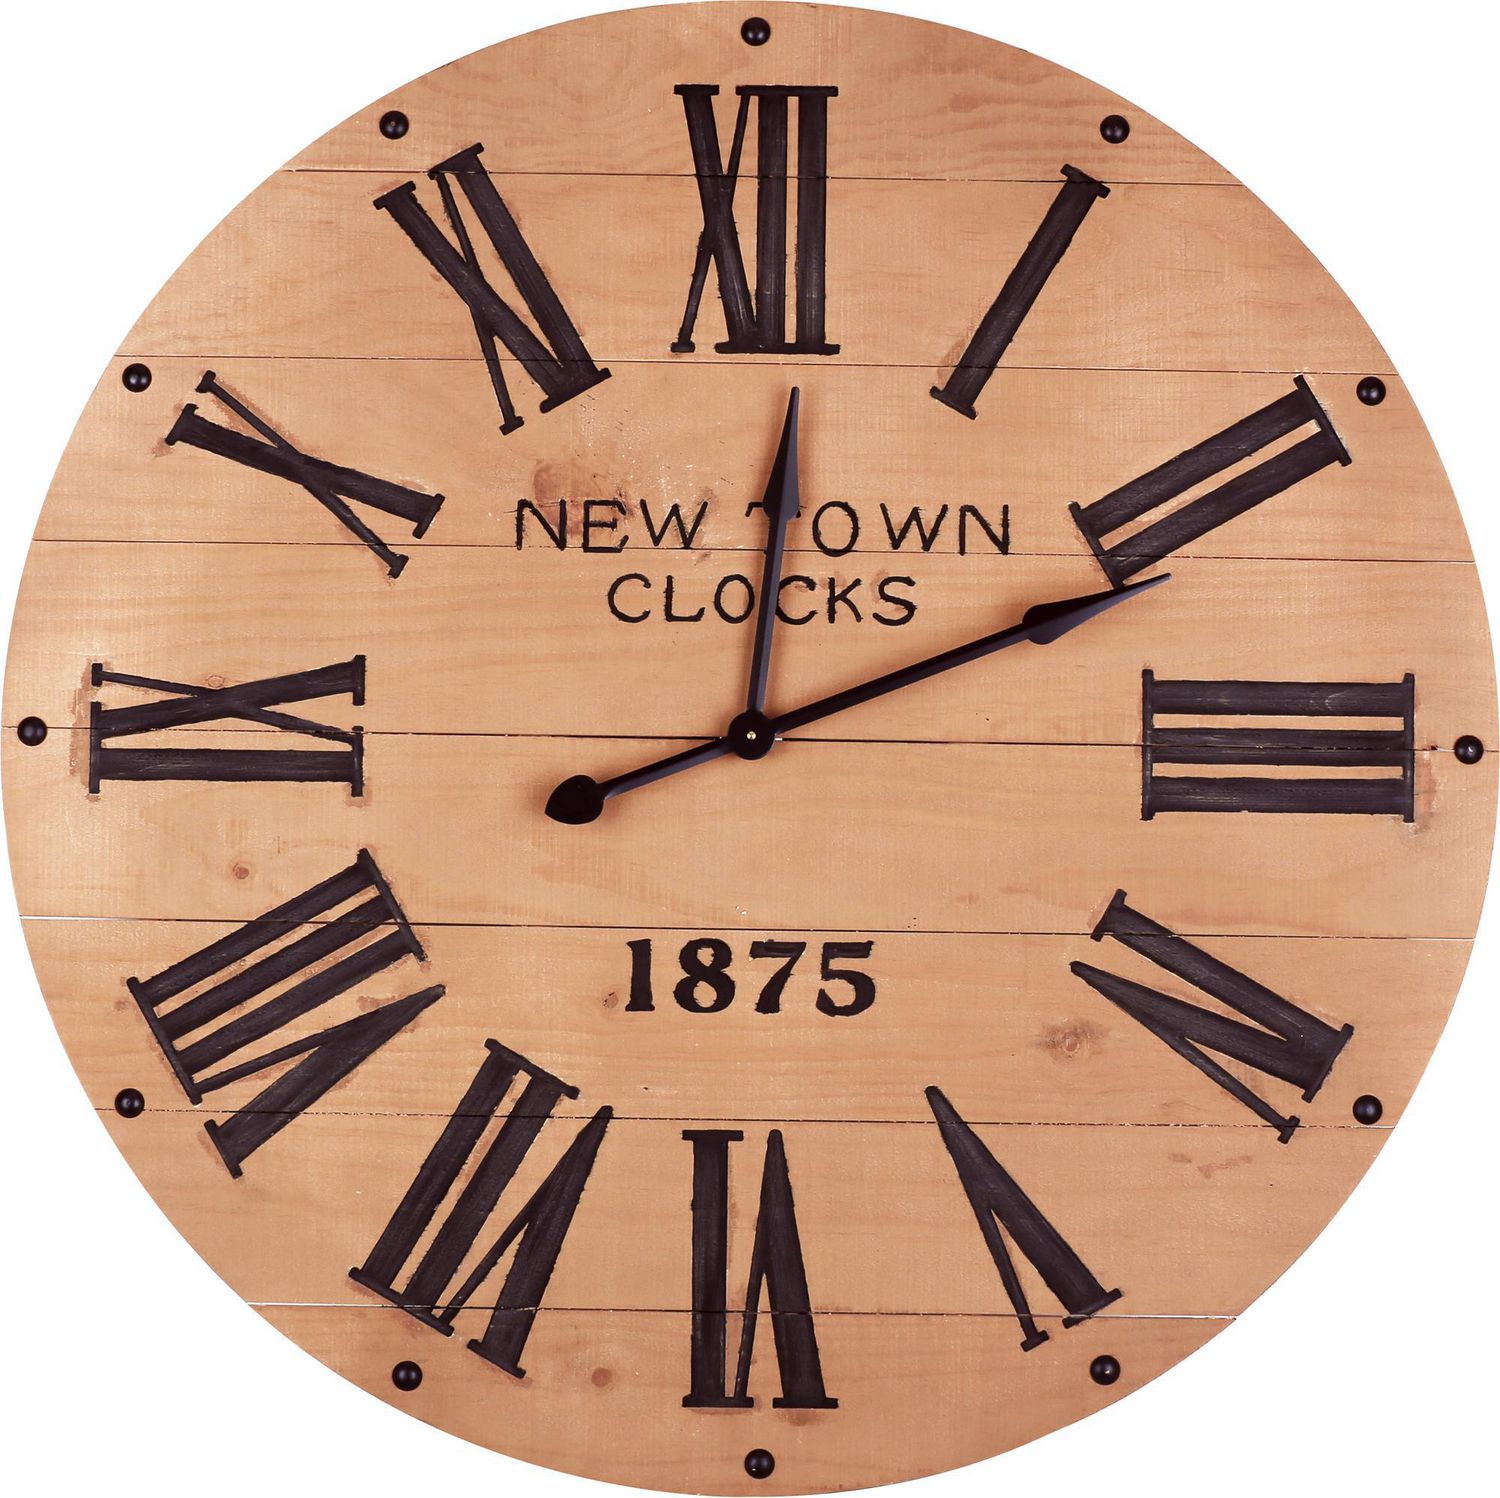 Horloge murale en bois ronde analogique chiffres romains Vintage horloge